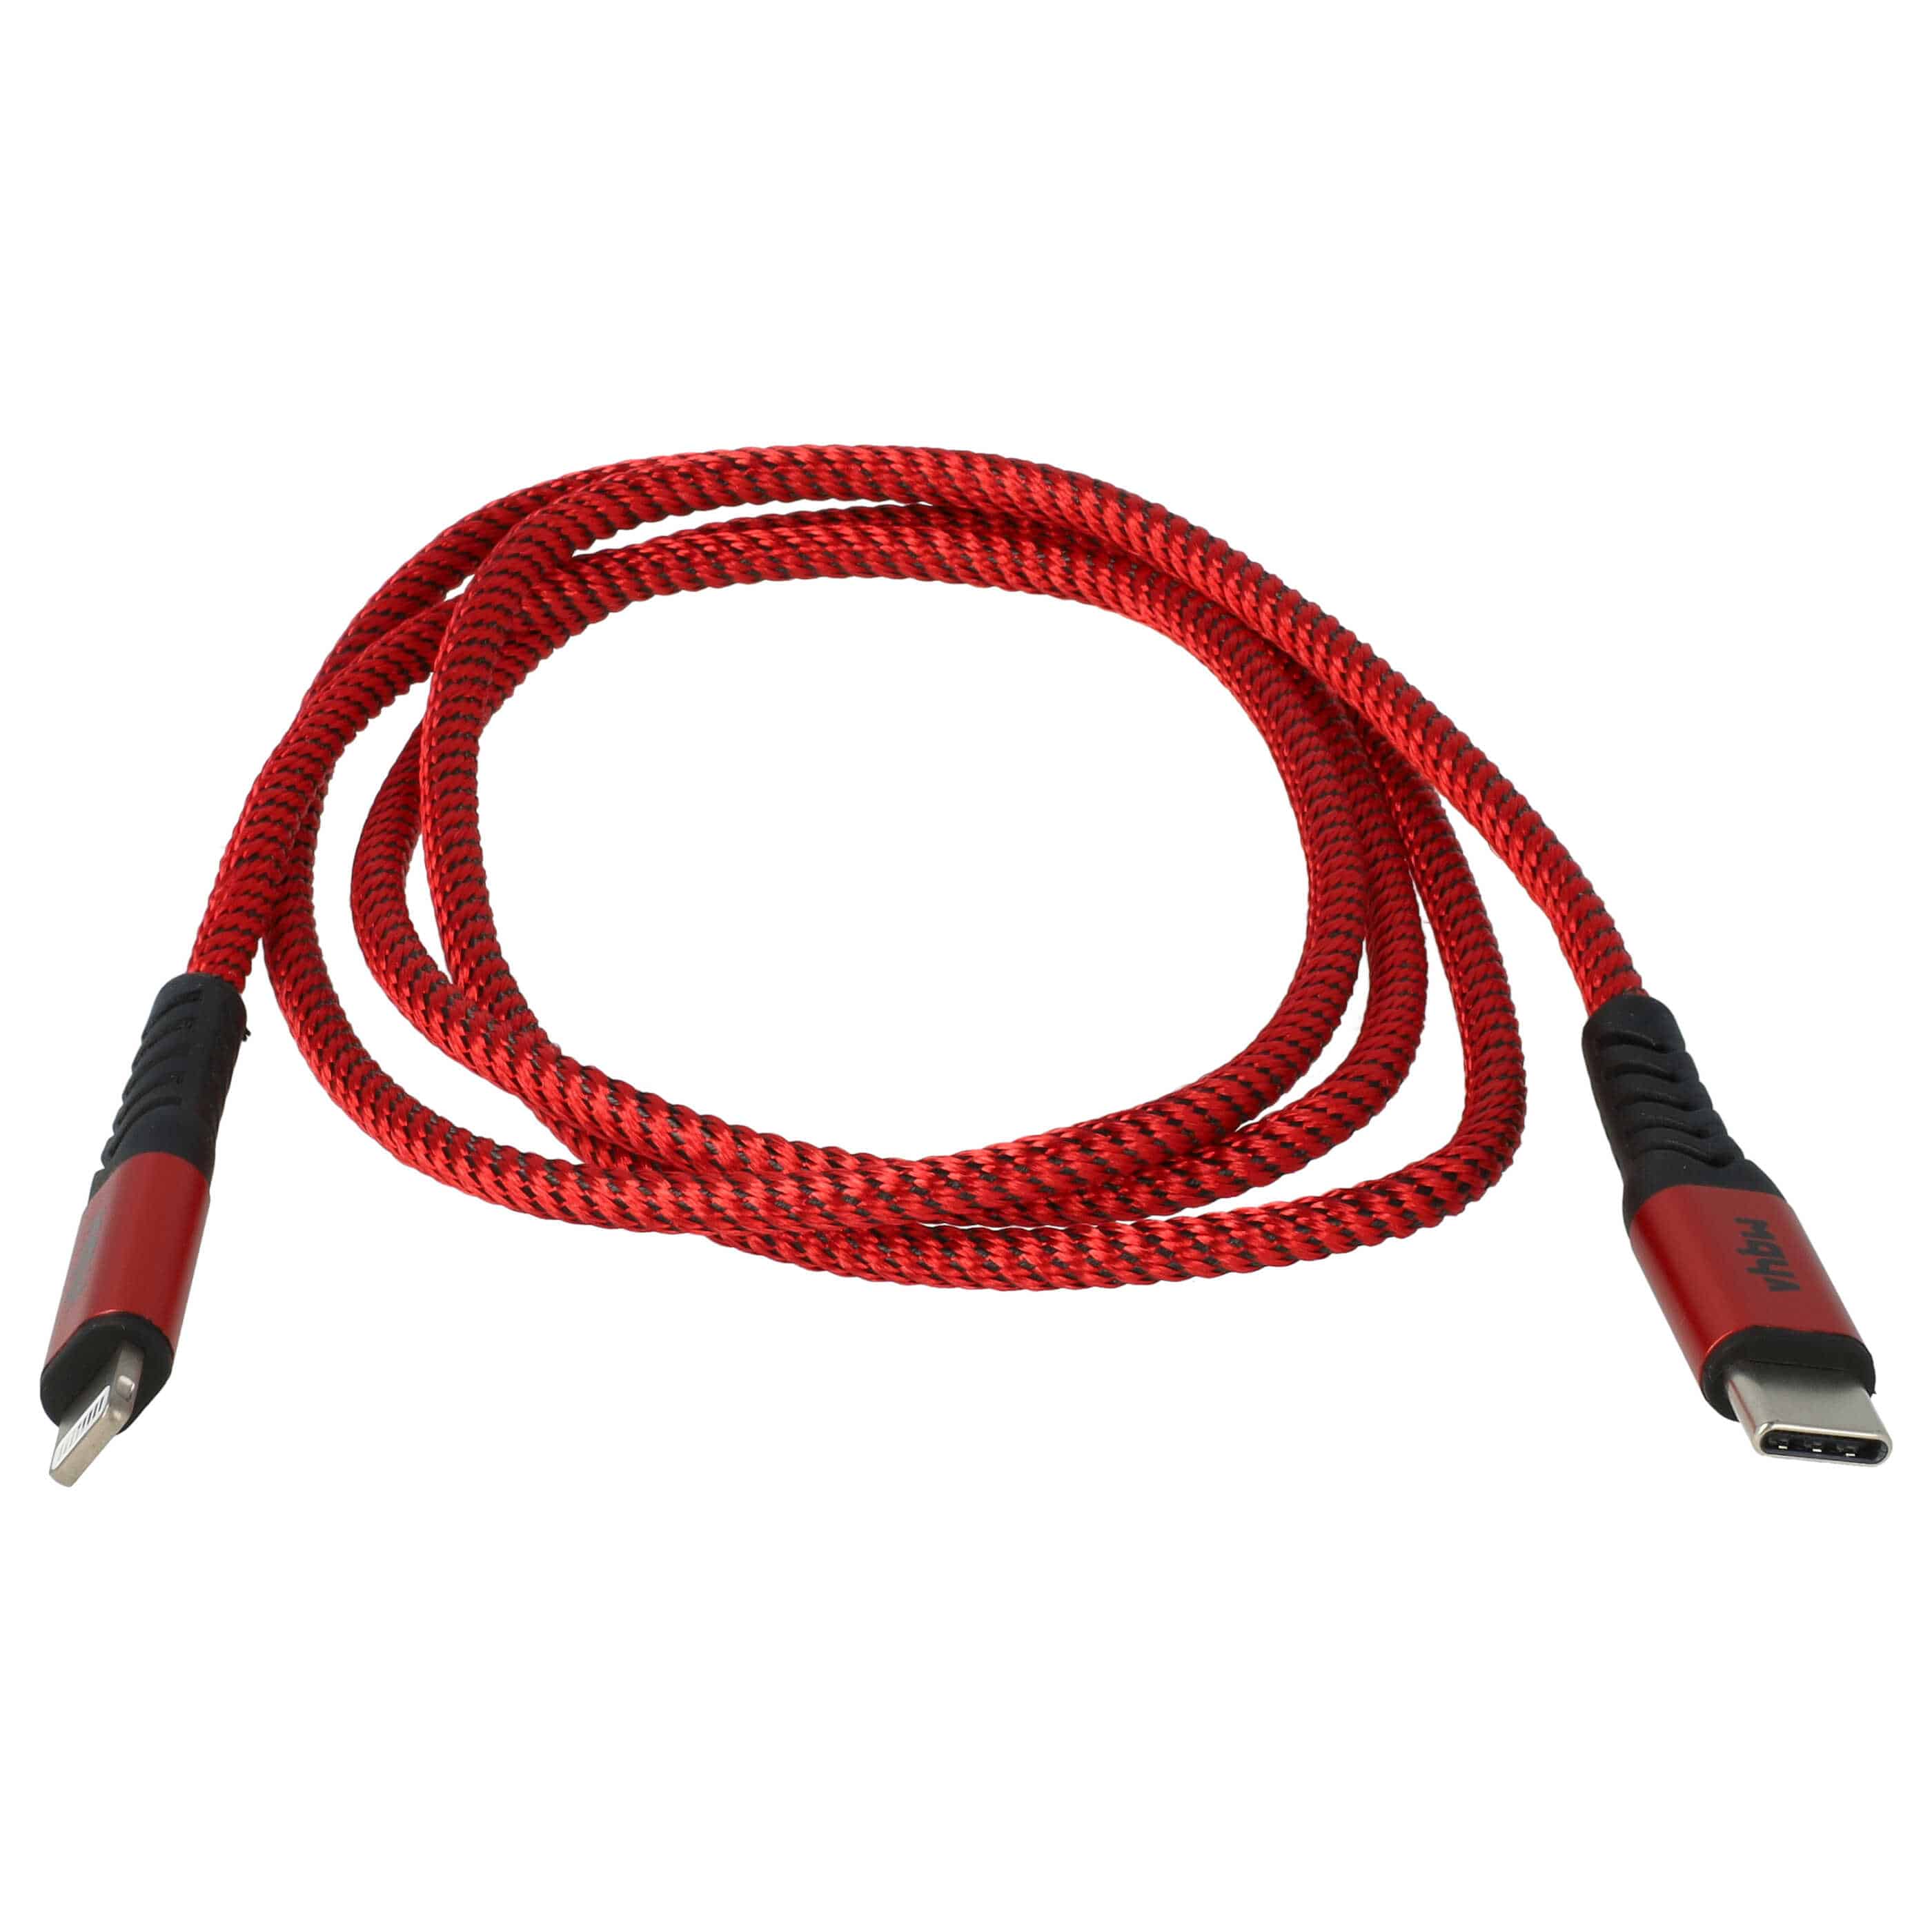 Kabel Lightning USB C, Thunderbolt 3 do urządzeń iOS Retina, 12" 2015-2017 - czarny / czerwony, 100 cm 